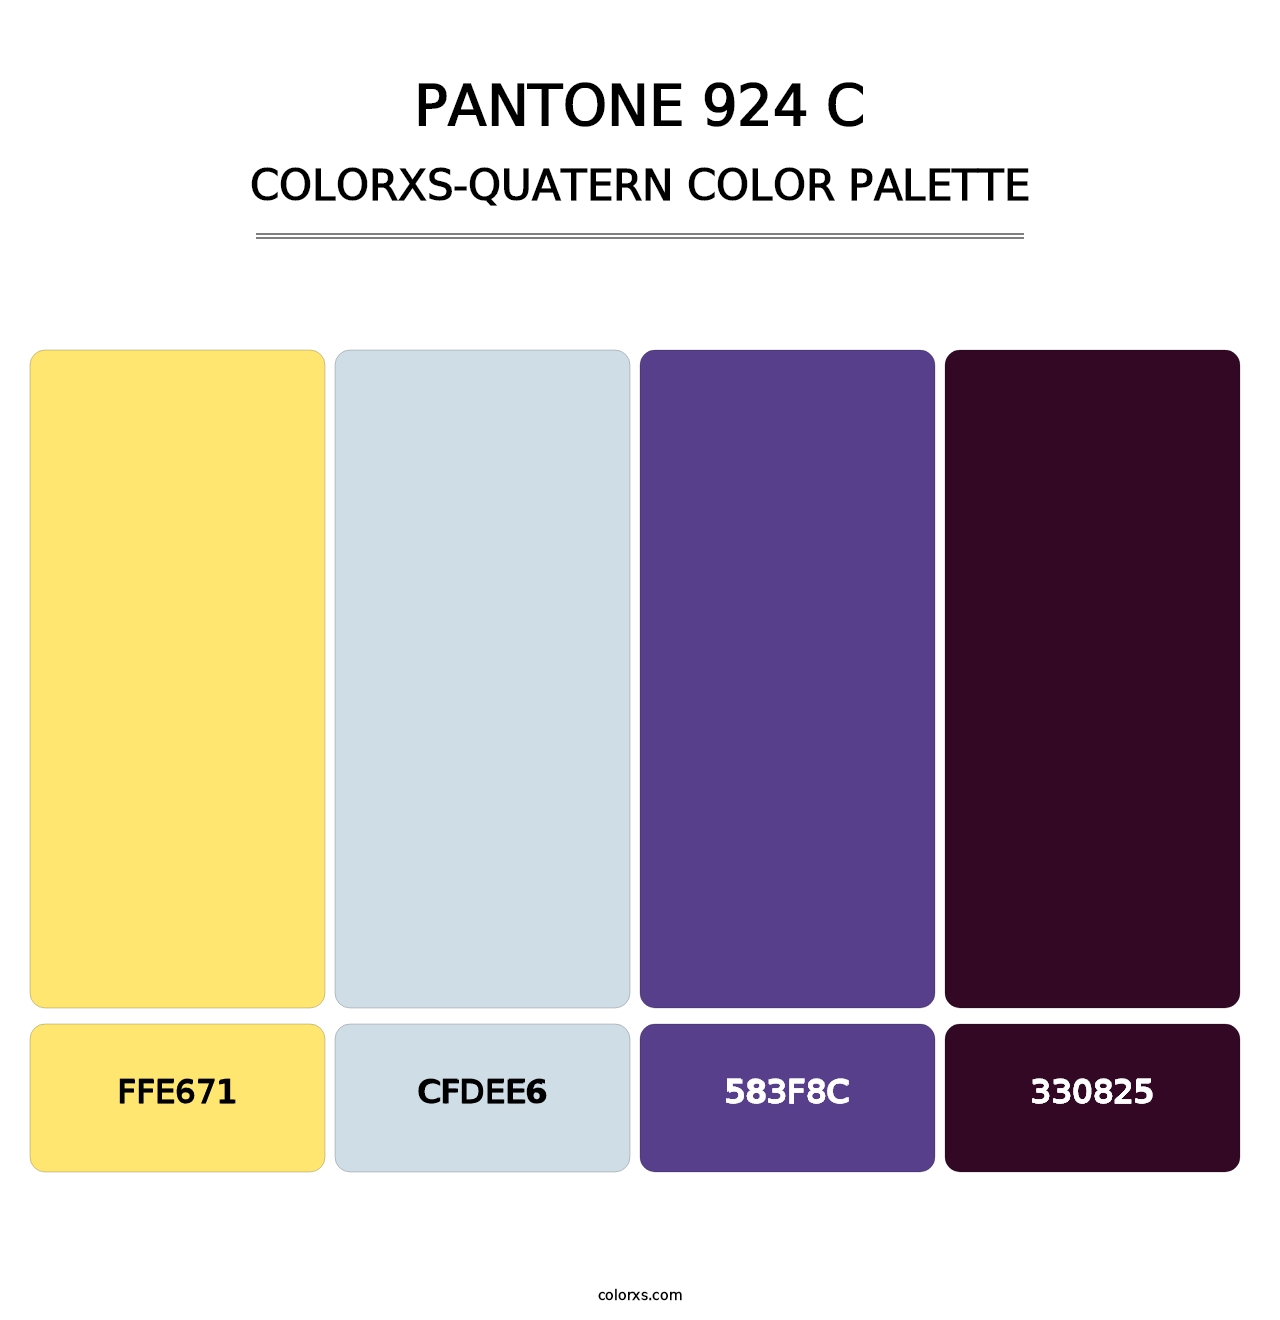 PANTONE 924 C - Colorxs Quatern Palette